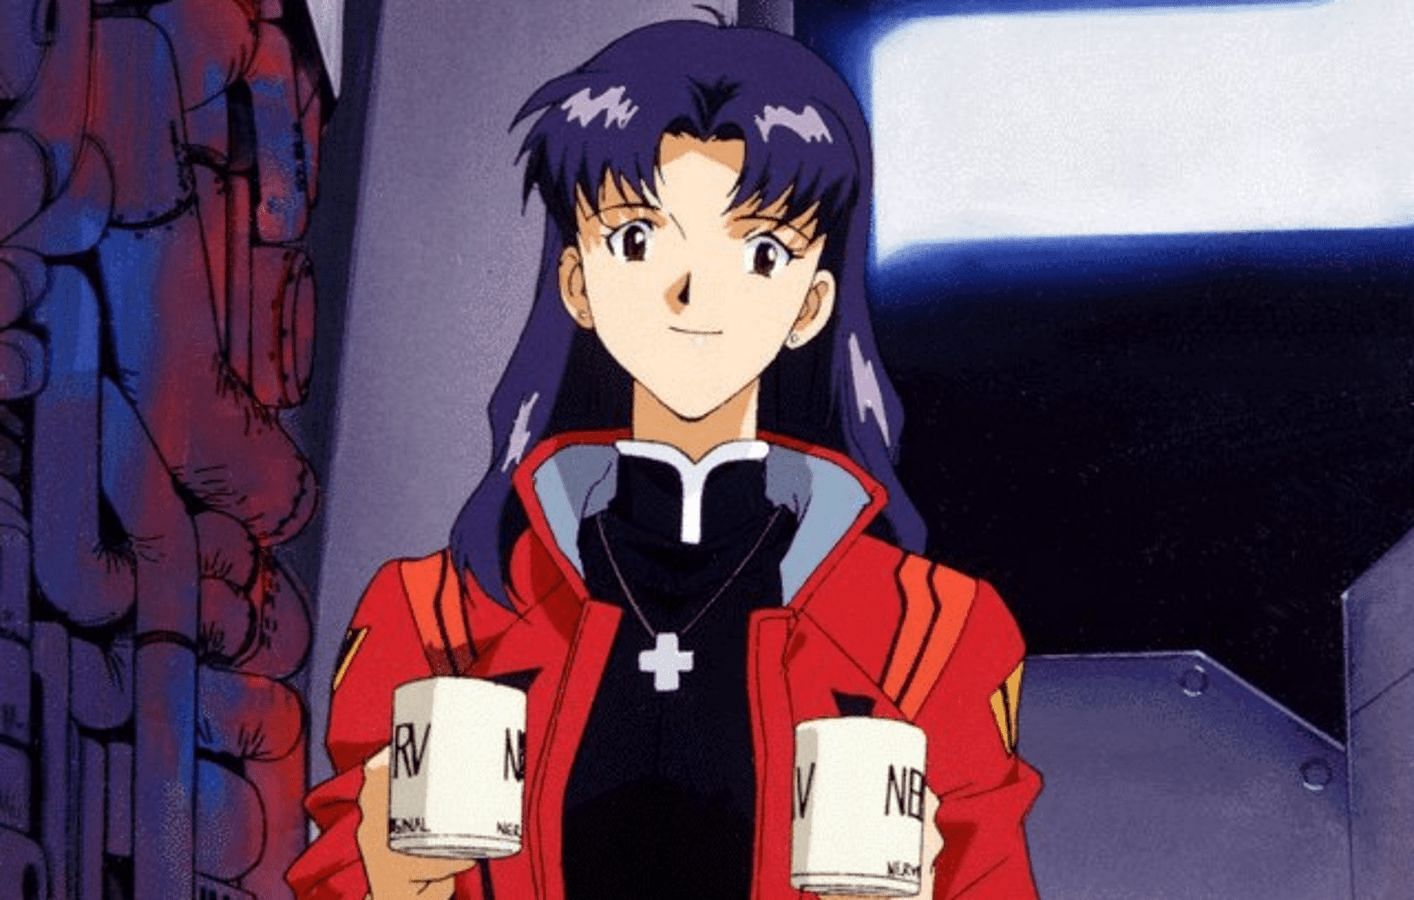 Misato Katsuragi as seen in Neon Genesis Evangelion (image via Studio Gainax, Tatsunoko Production)